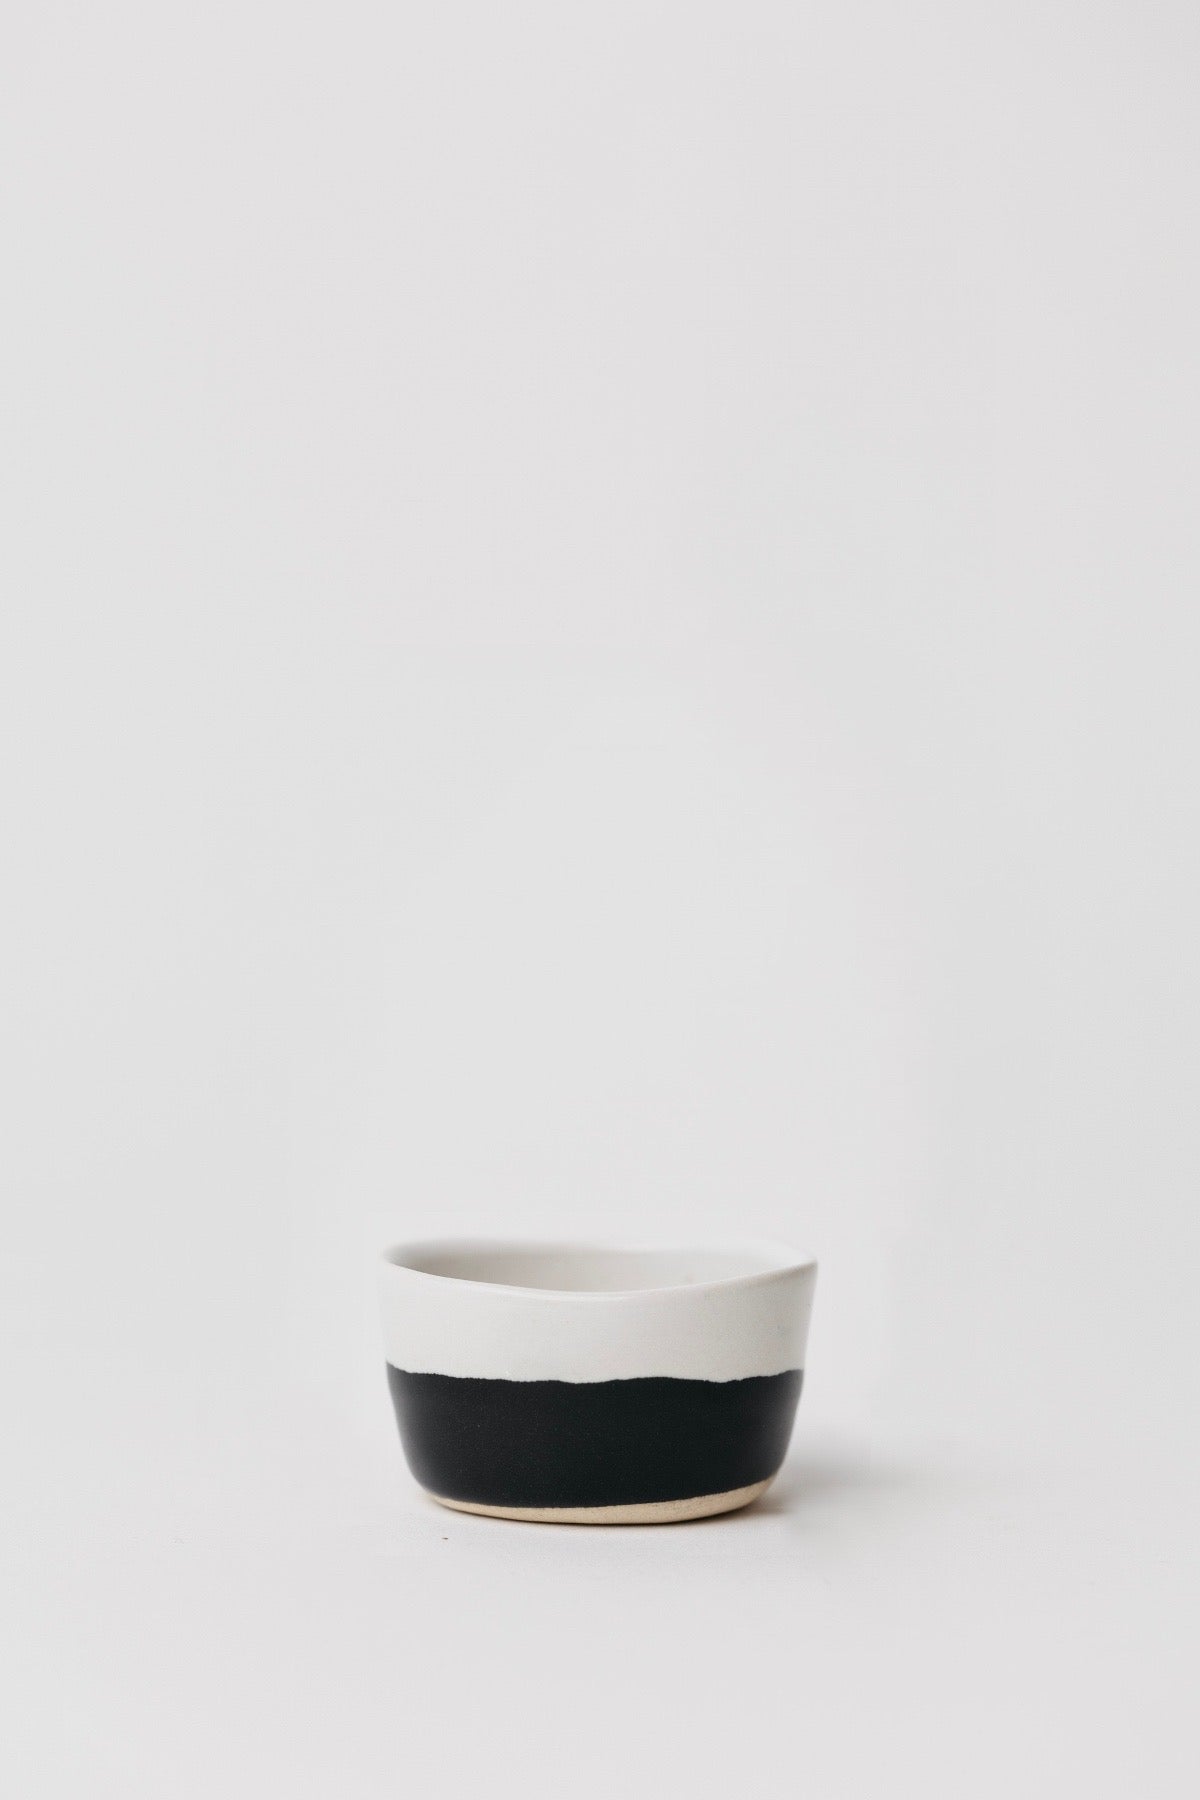 Dawson Pinch Bowl - Matte Black/White - Set of 4